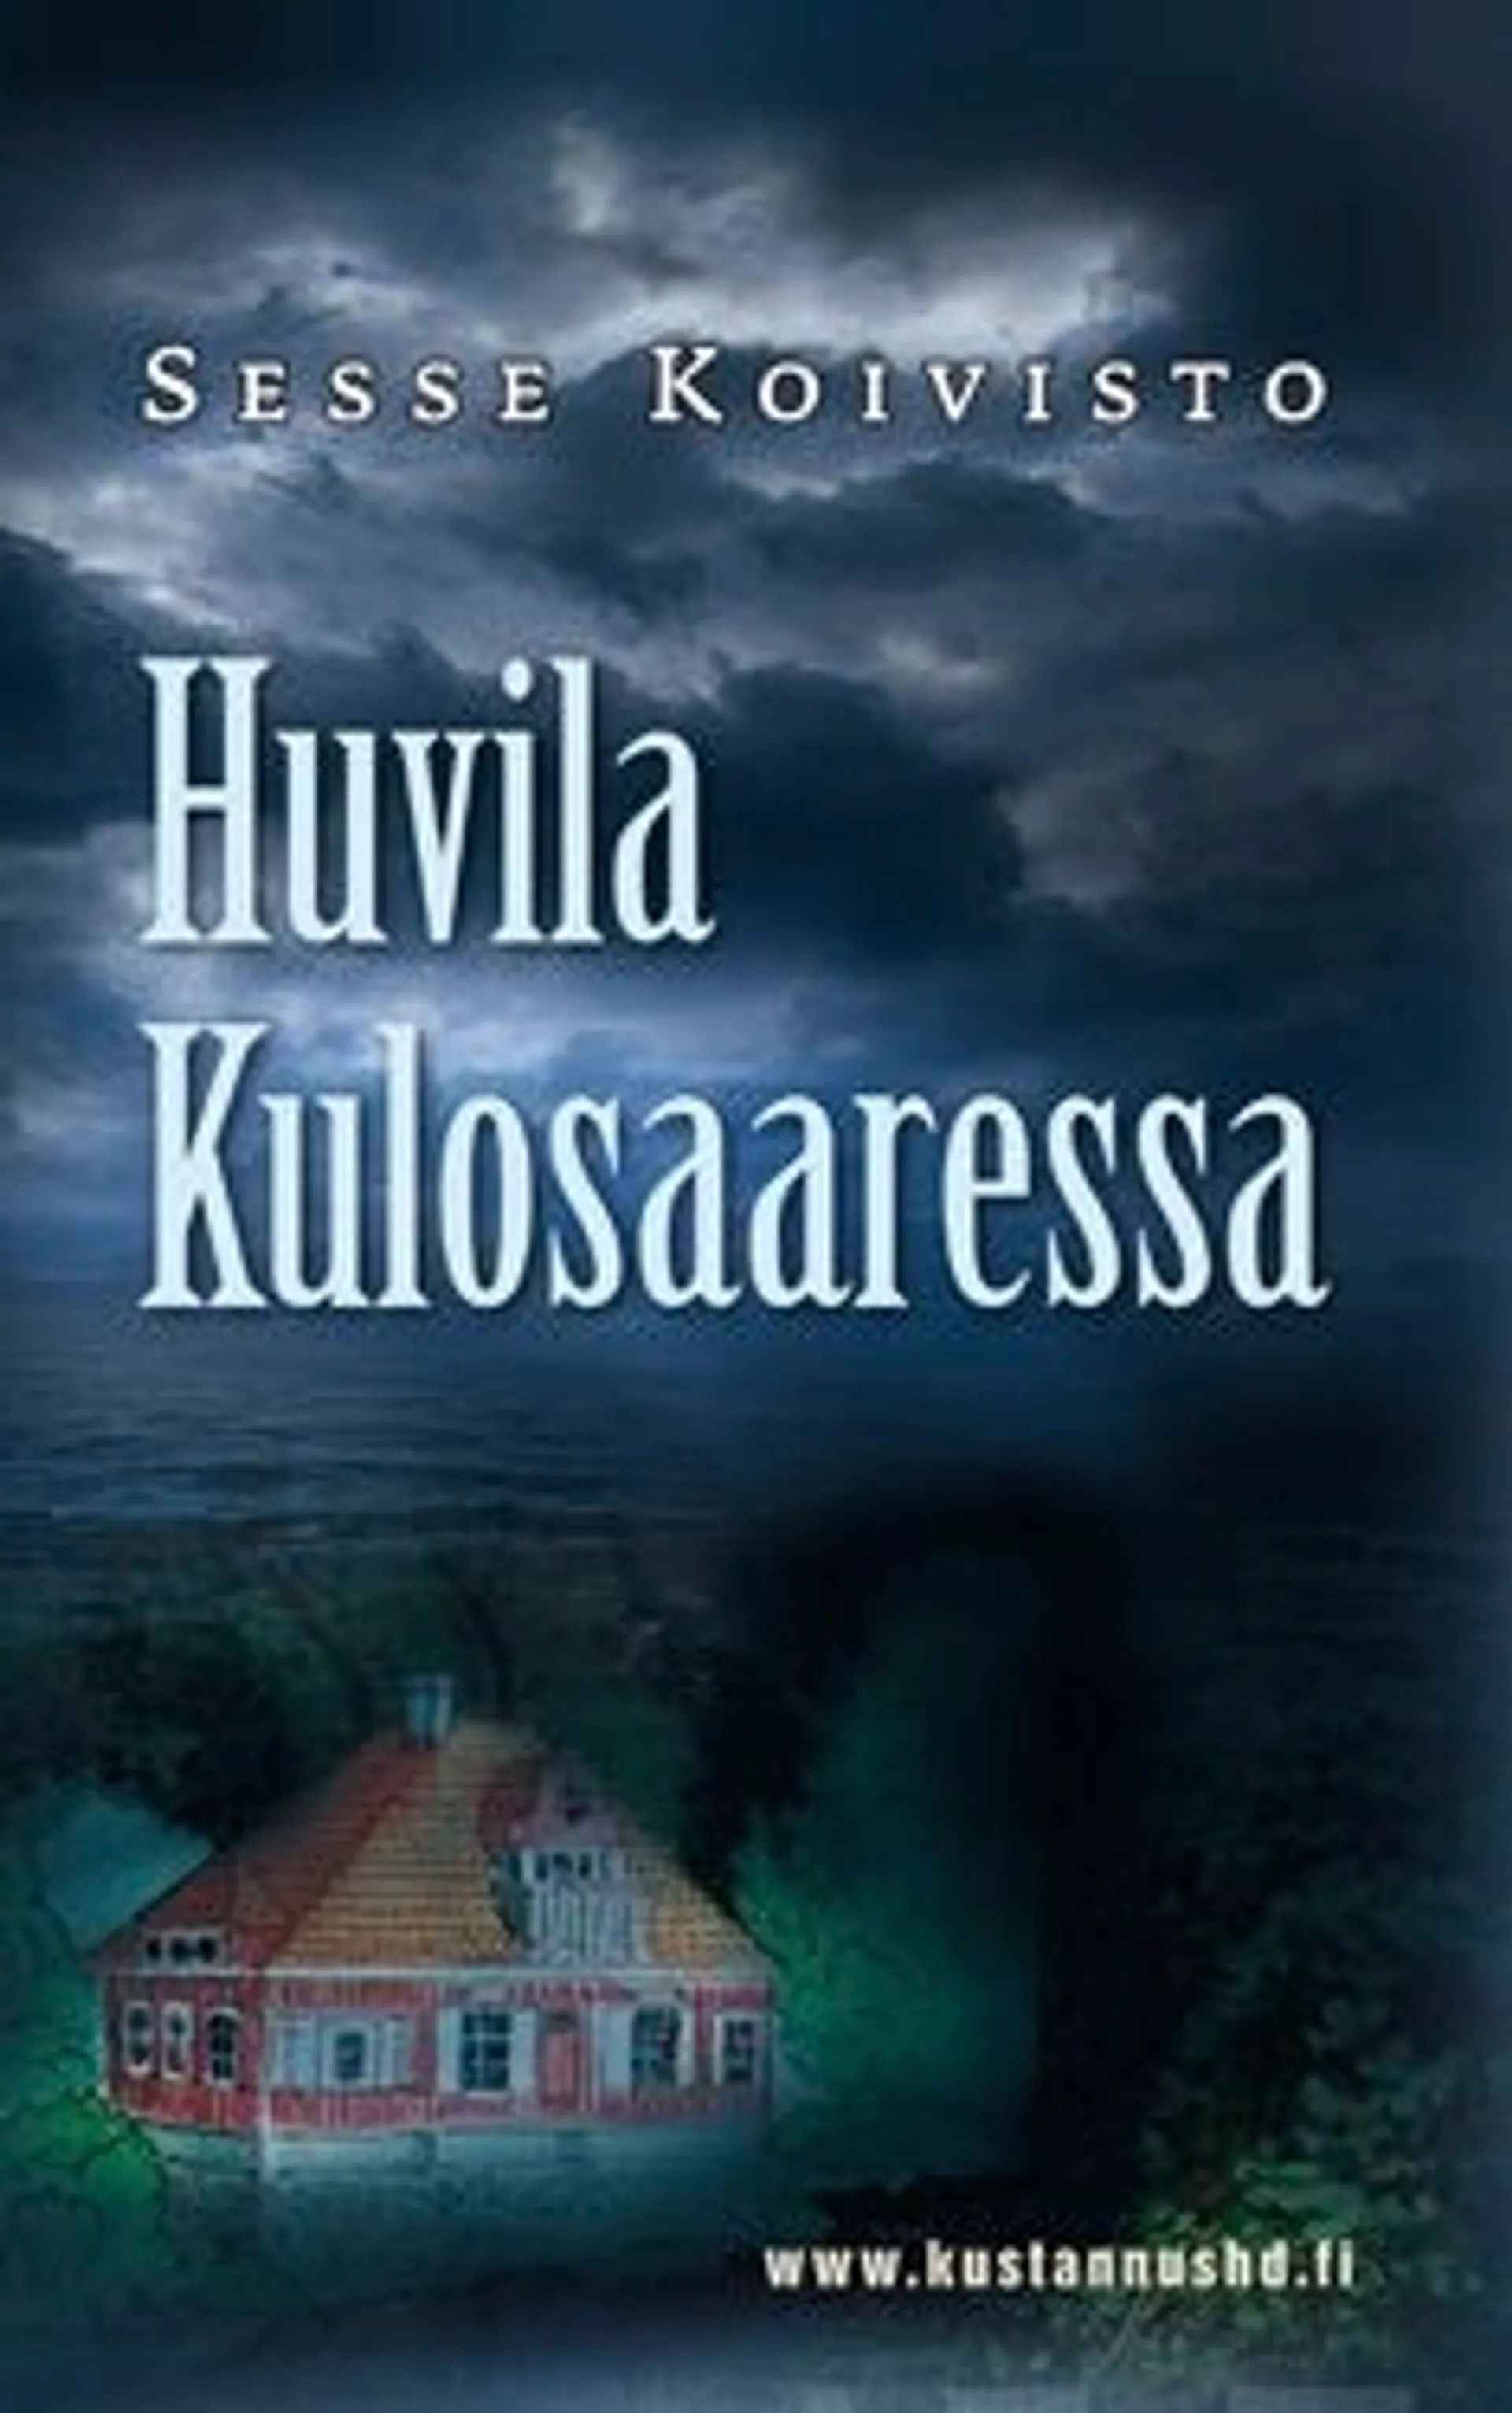 Koivisto, Huvila Kulosaaressa